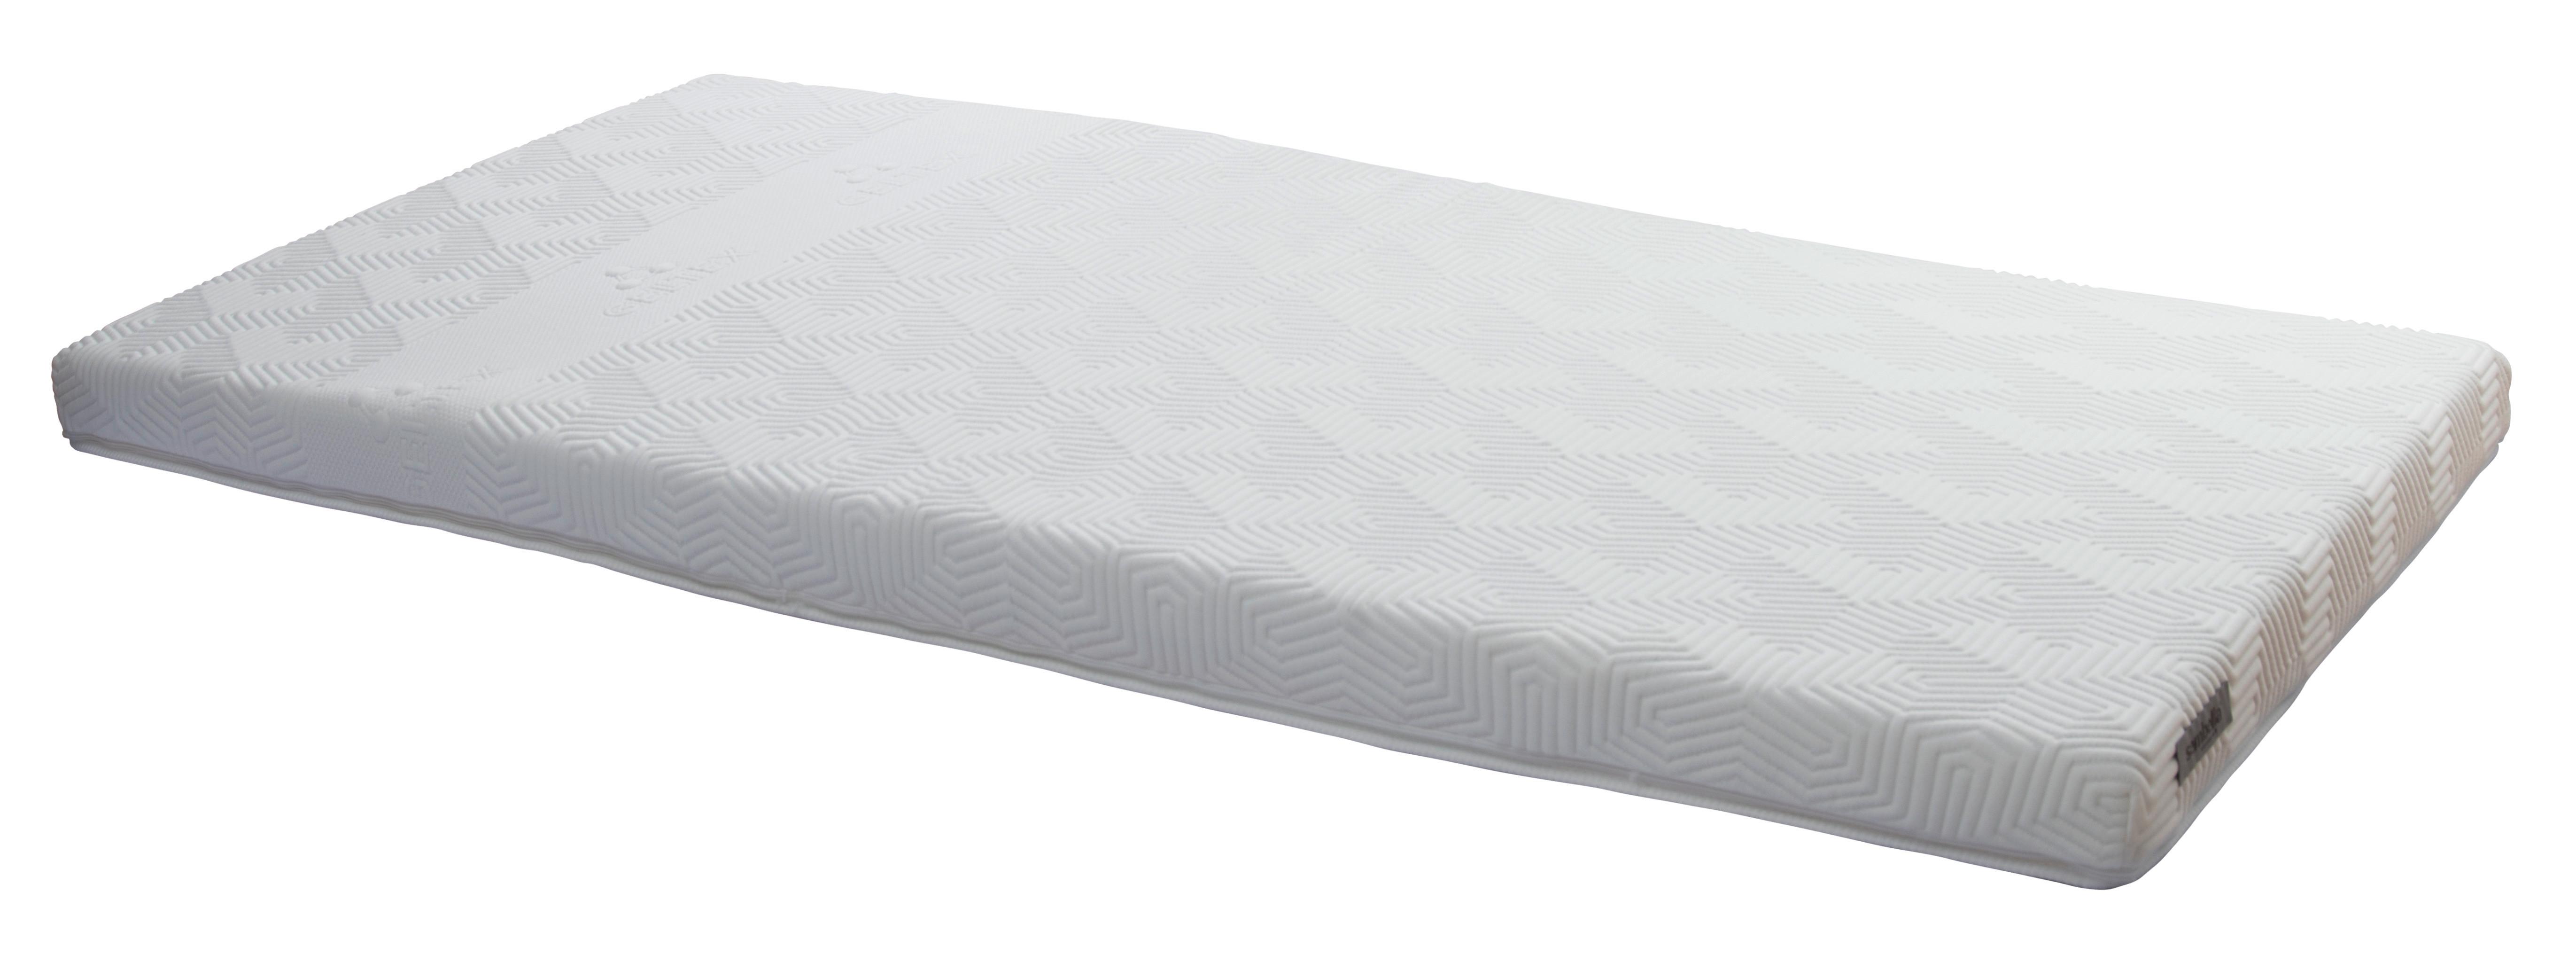 Topper Geltex - Weiß, Textil (90/200cm) - Sembella